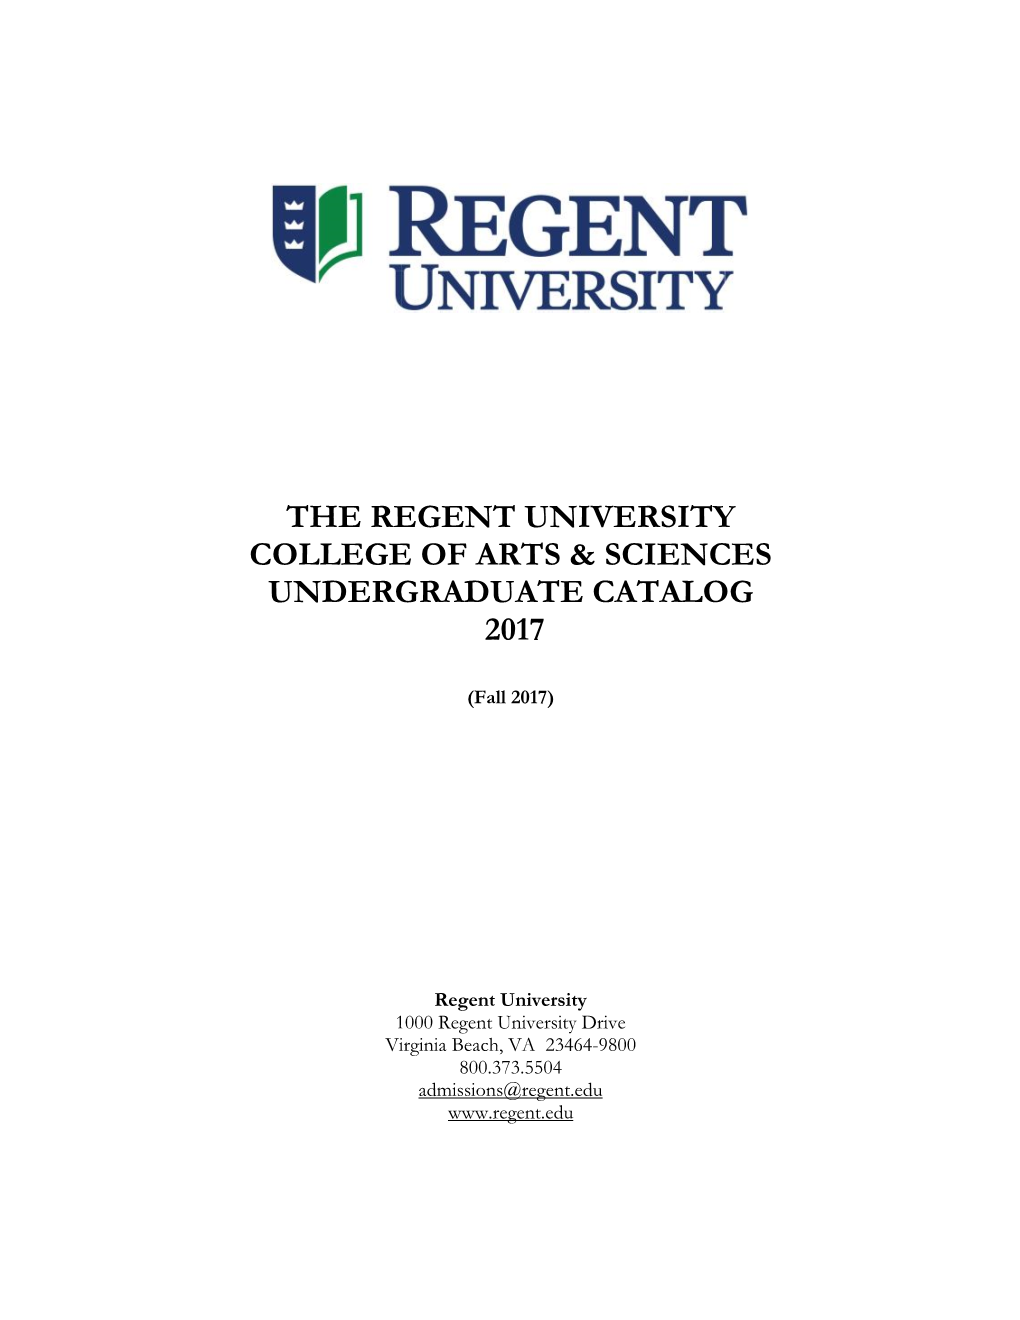 The Regent University College of Arts & Sciences Undergraduate Catalog 2017